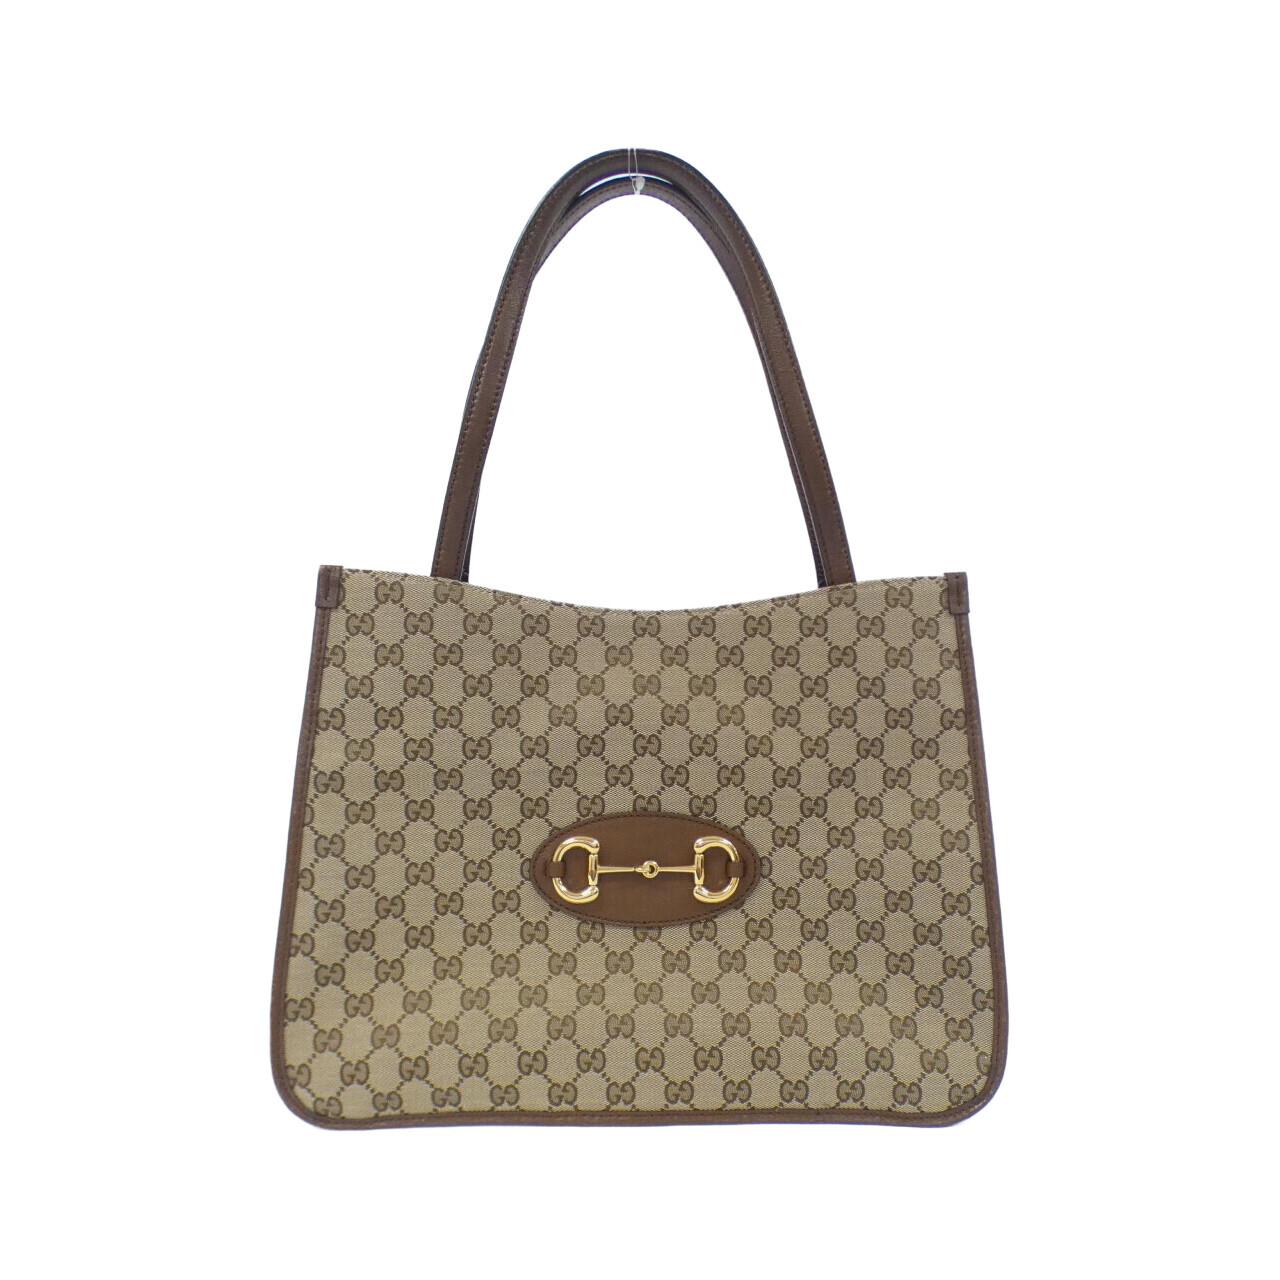 Gucci GUCCI HORSEBIT 1955 623694 GY5OG bag